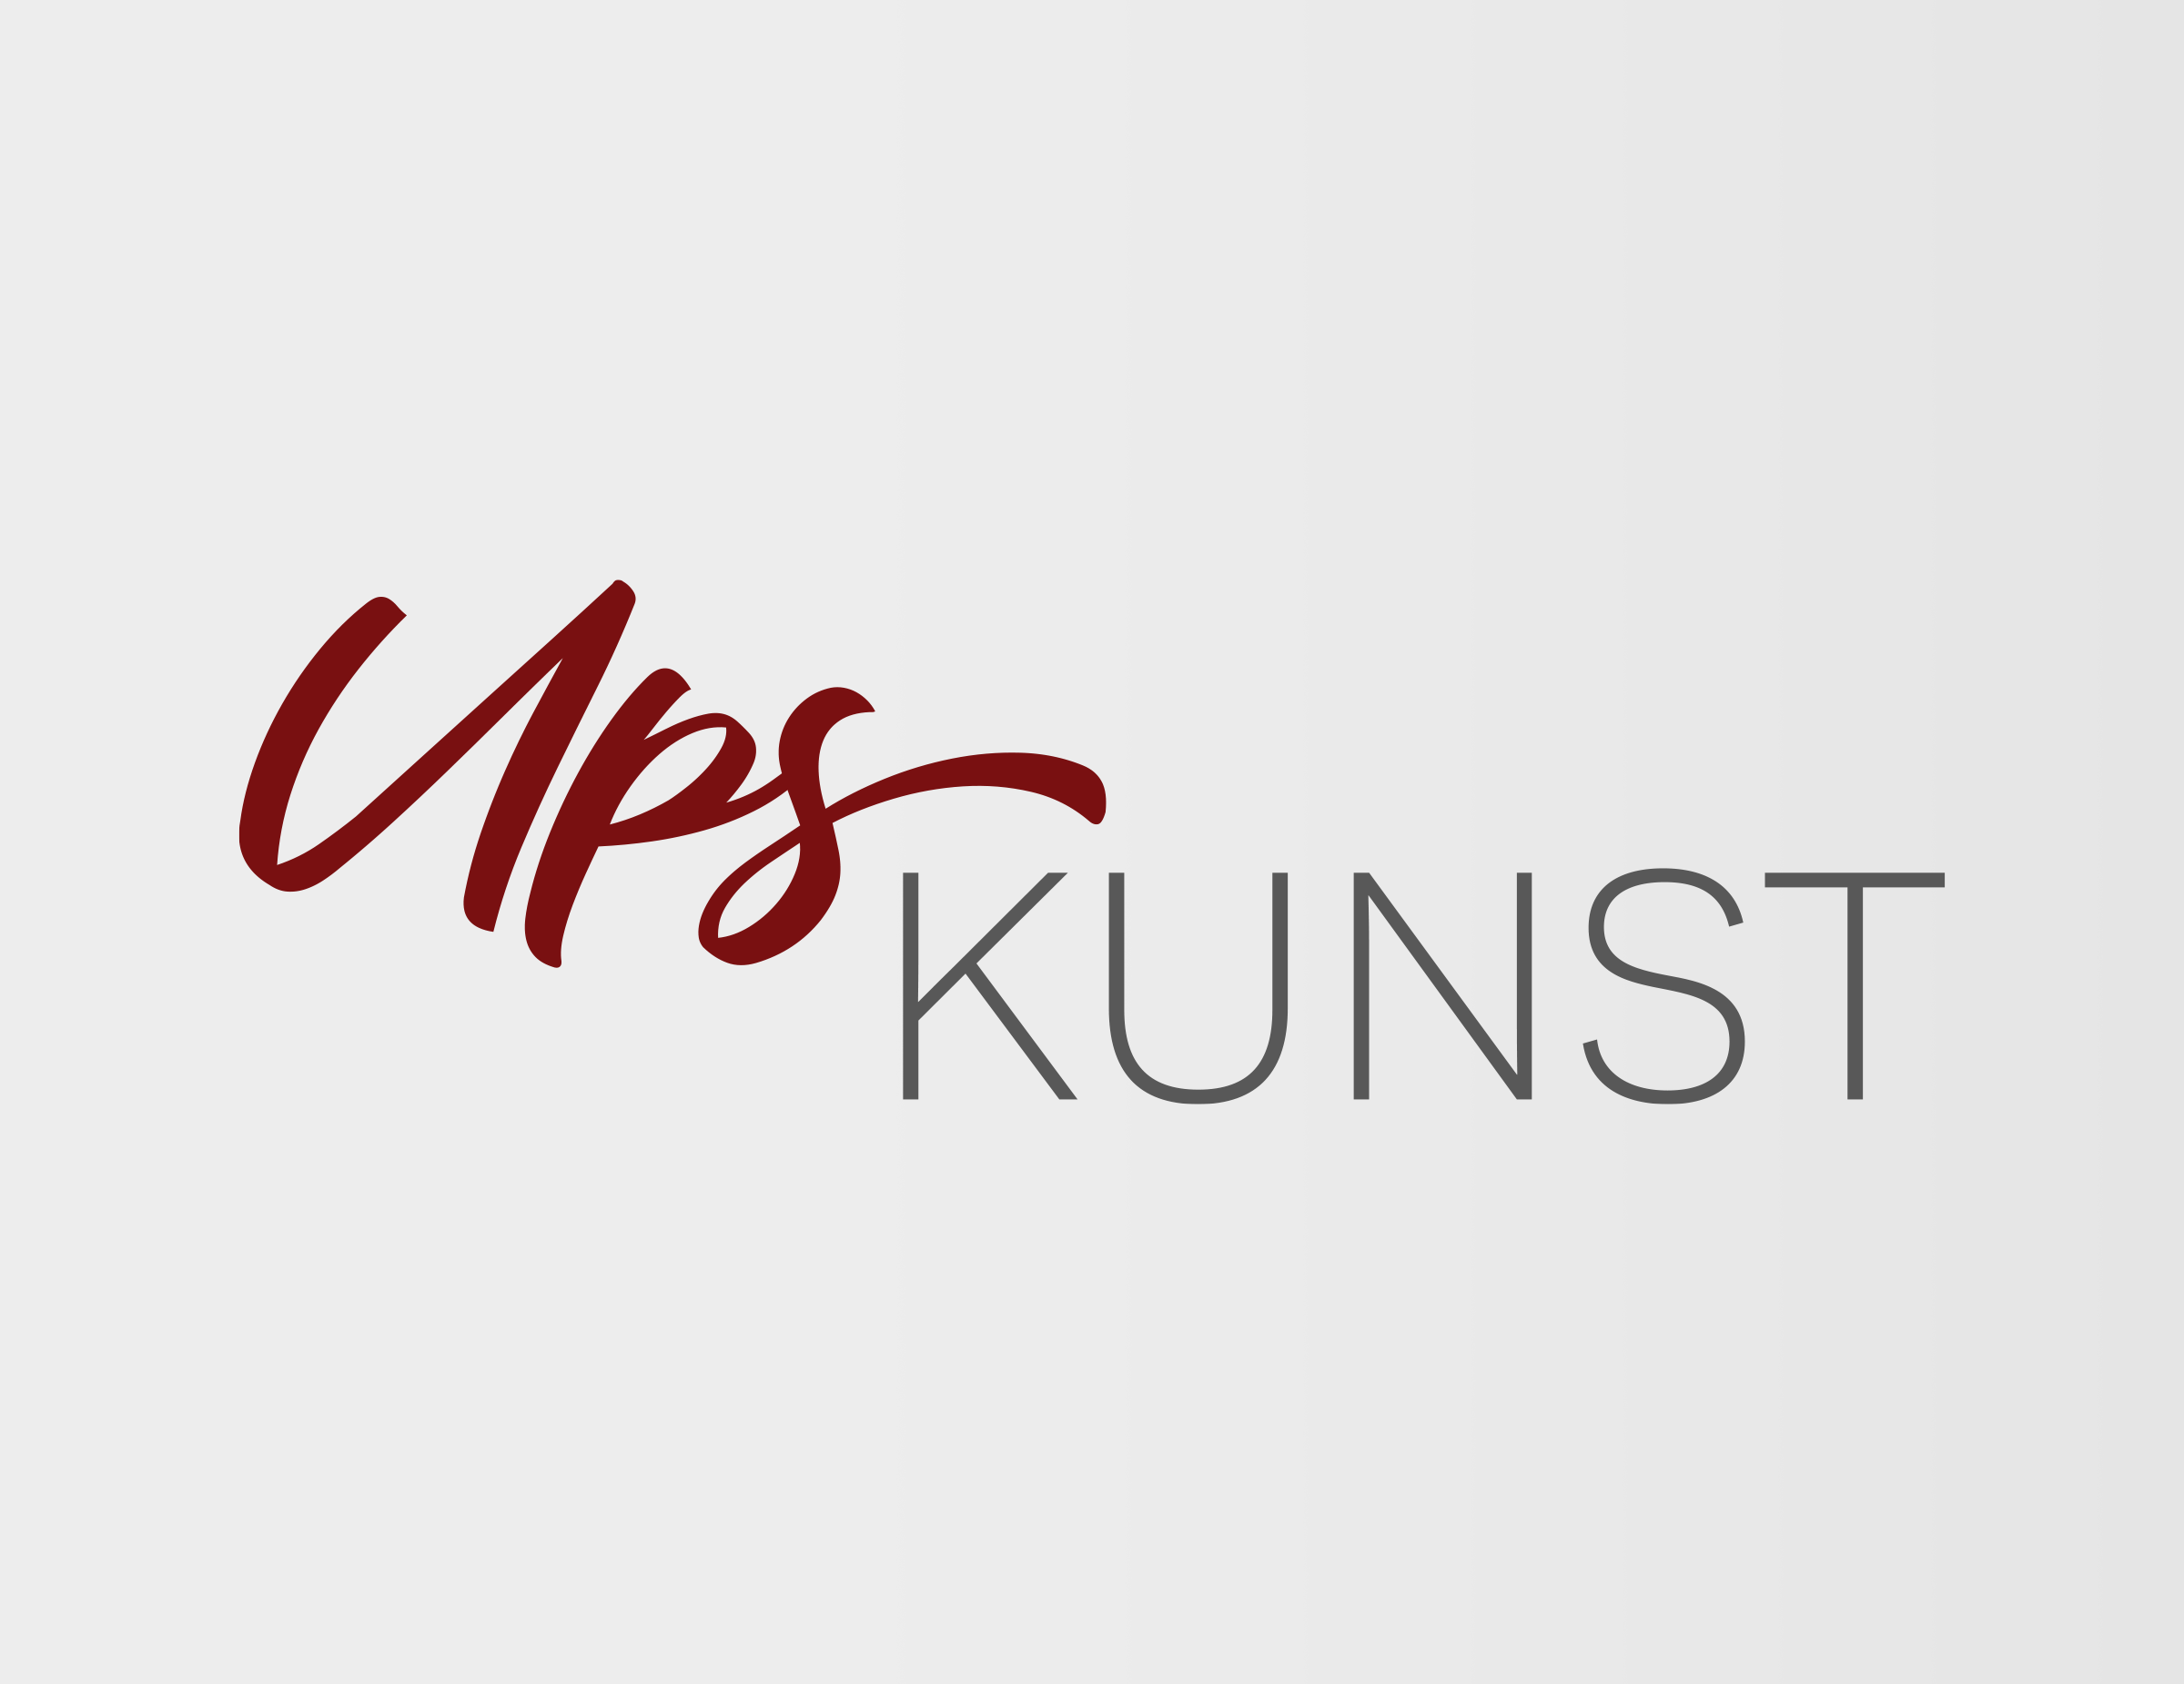 UpsKunst Logo